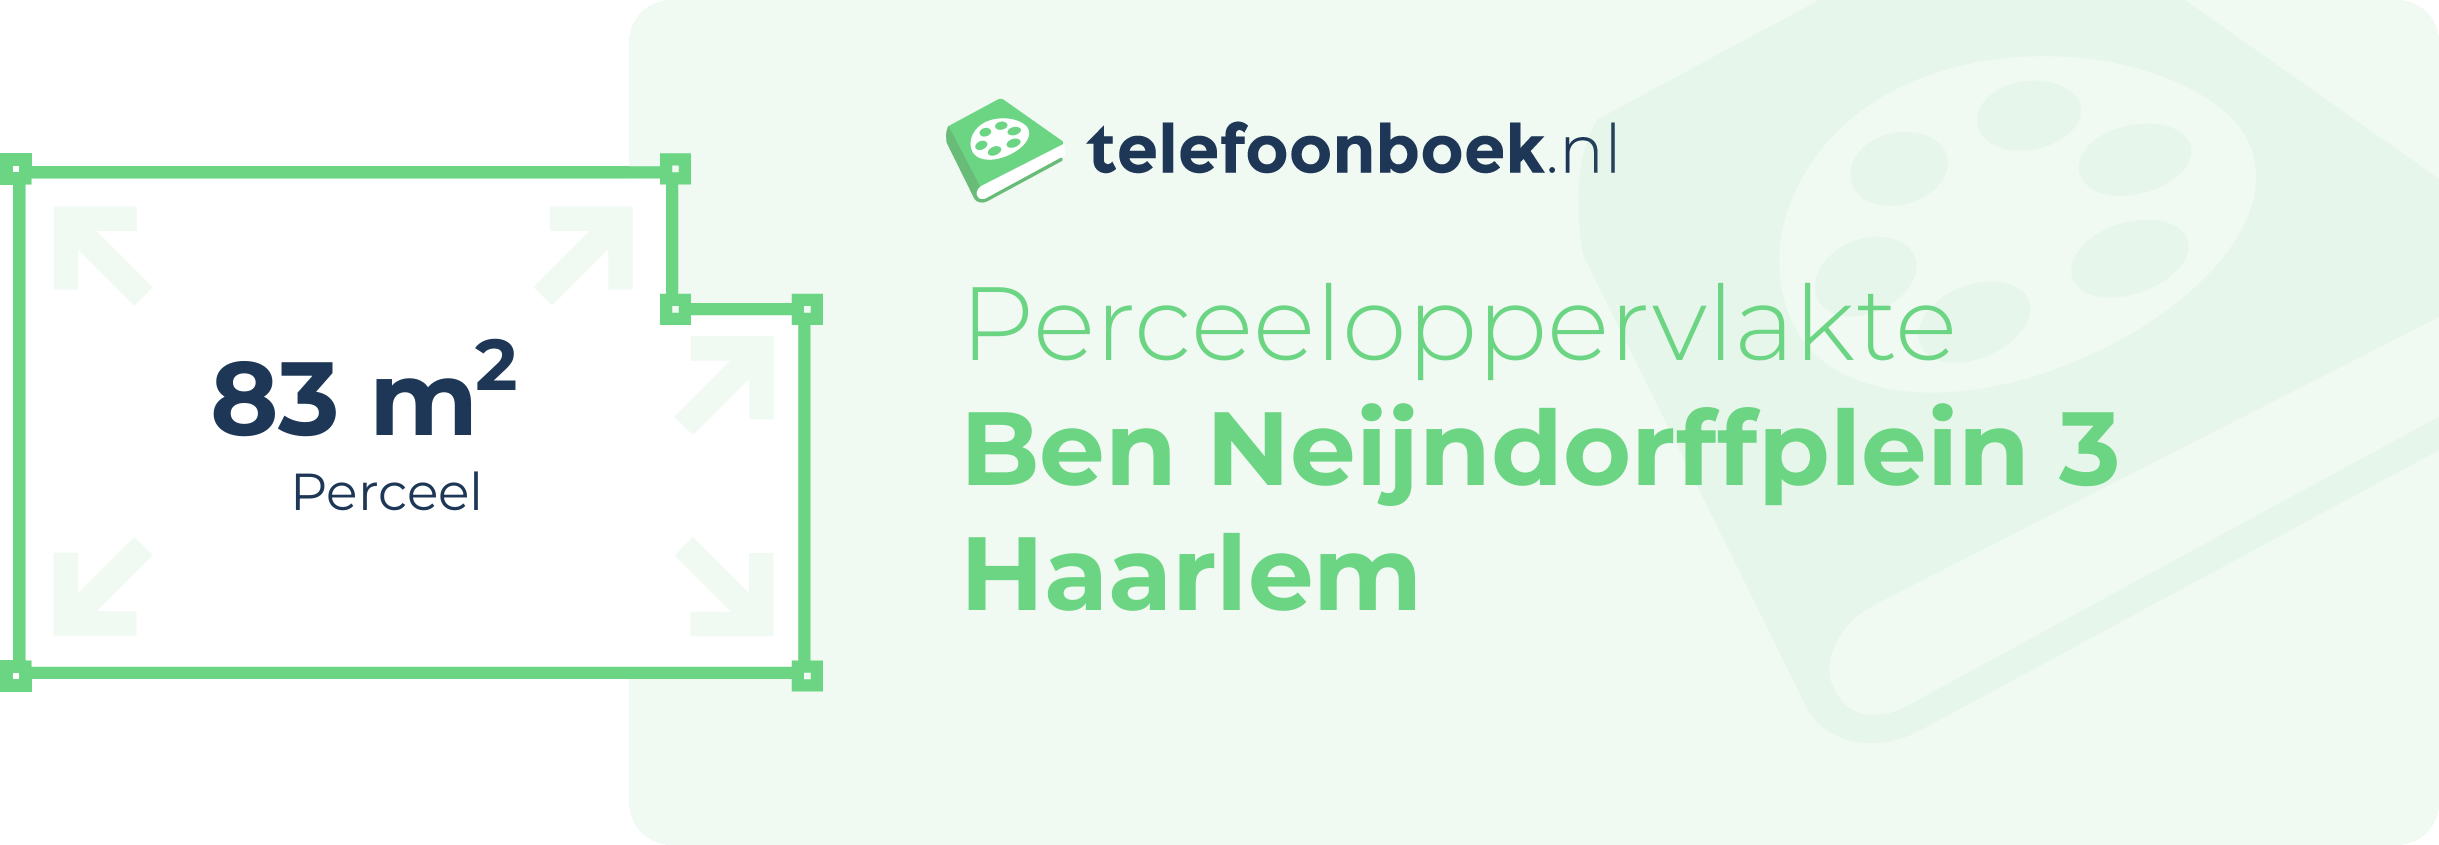 Perceeloppervlakte Ben Neijndorffplein 3 Haarlem